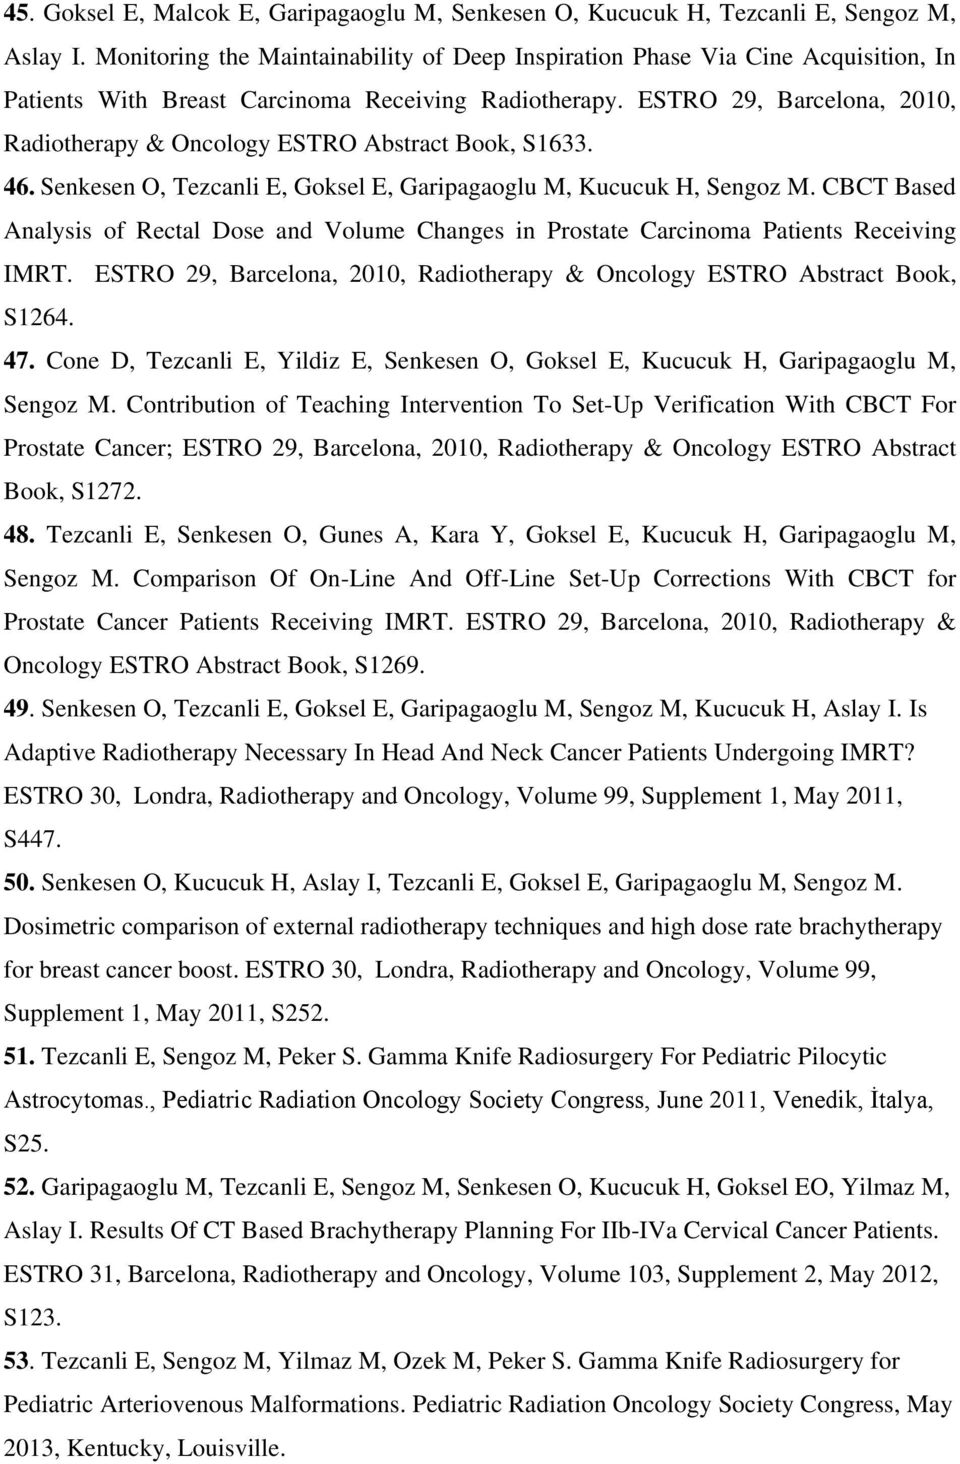 ESTRO 29, Barcelona, 2010, Radiotherapy & Oncology ESTRO Abstract Book, S1633. 46. Senkesen O, Tezcanli E, Goksel E, Garipagaoglu M, Kucucuk H, Sengoz M.